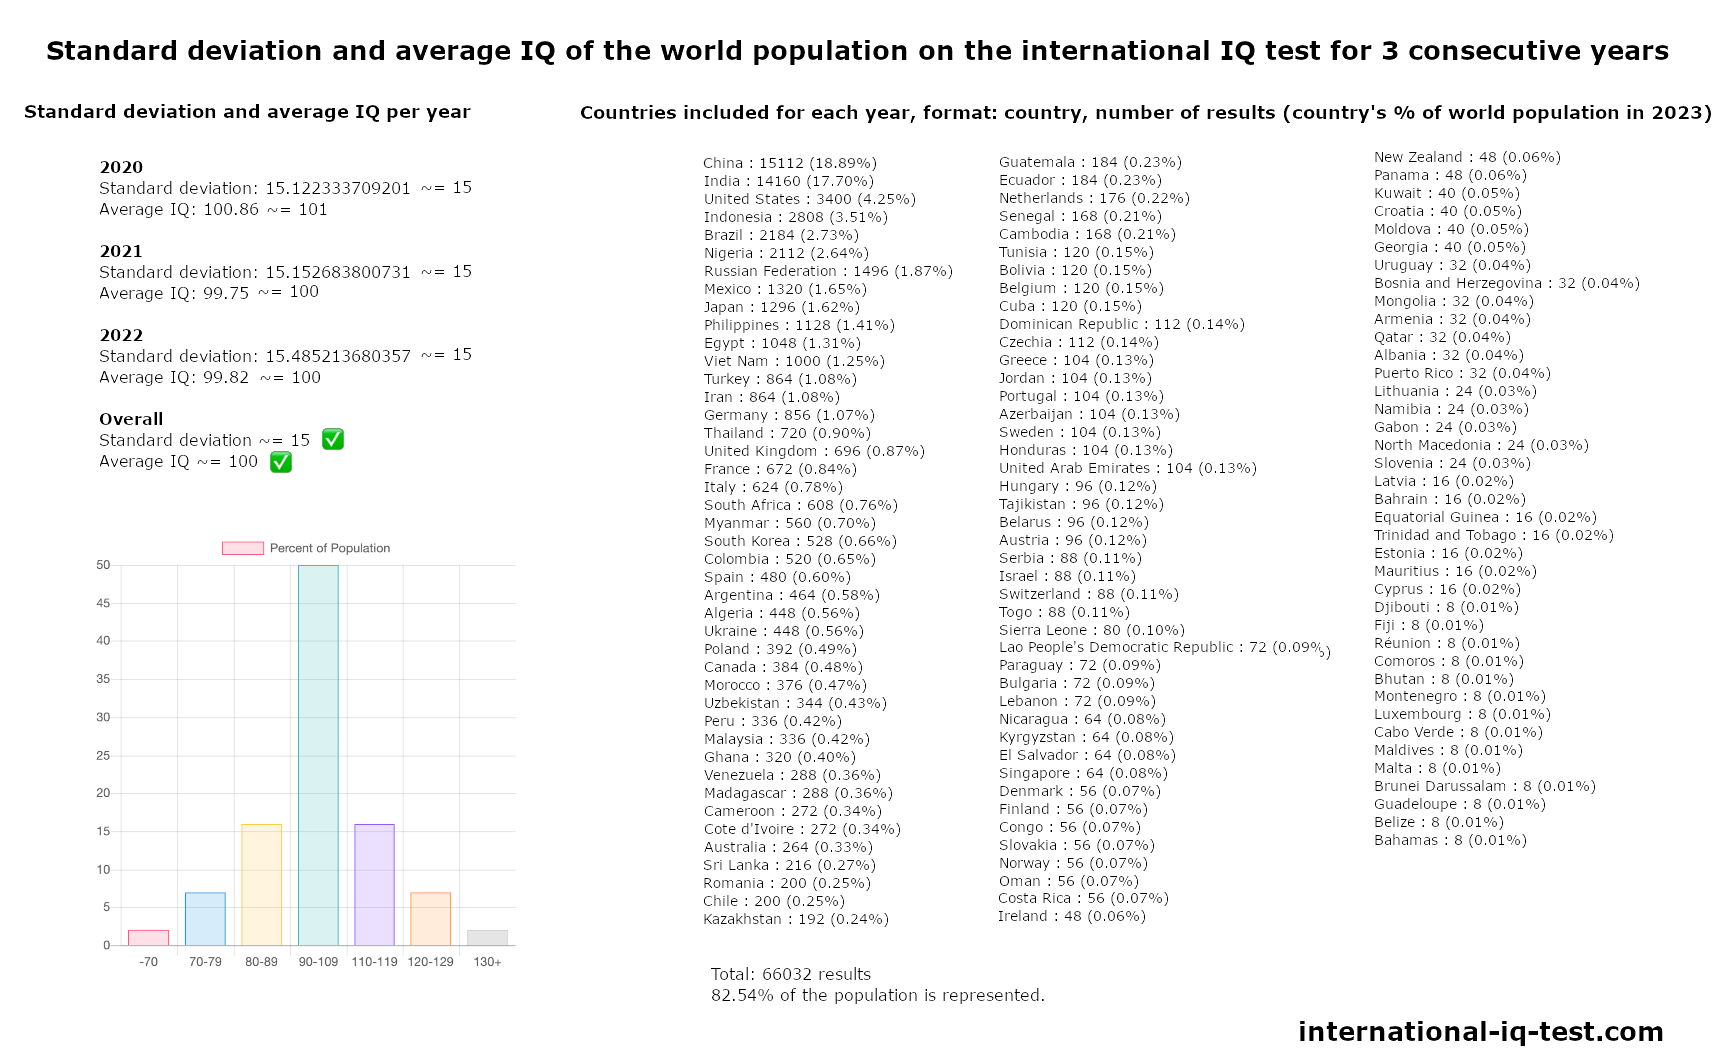 Odchylenie standardowe i średnie IQ światowej populacji w międzynarodowym teście IQ w latach 2020, 2021 i 2022